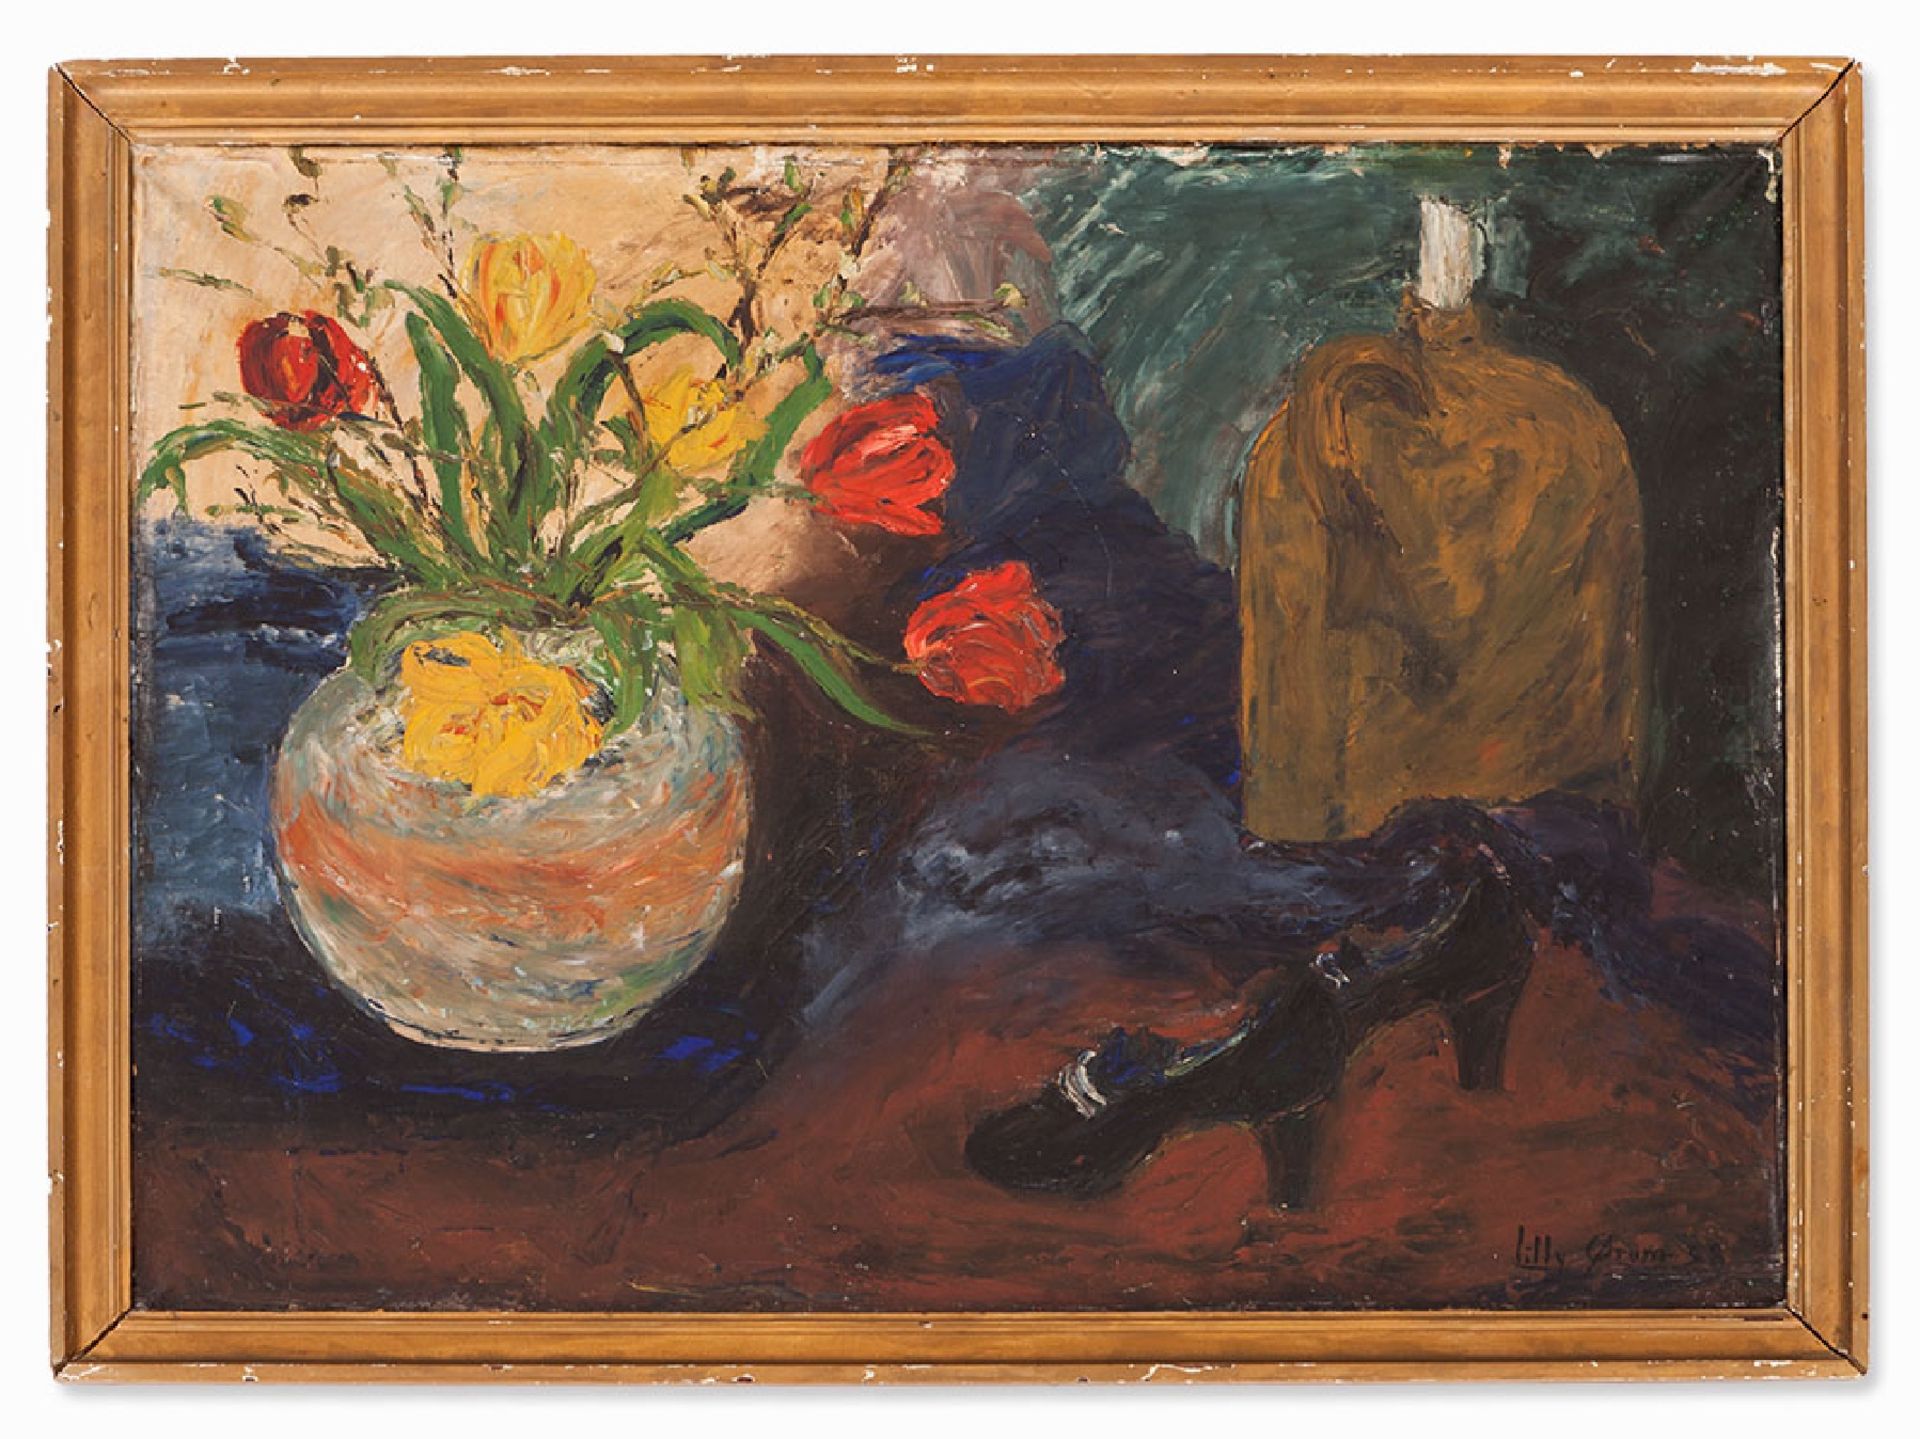 Lilly Orum, Blumenstillleben mit Schuhen, 1938 | Lilly Orum, Oil Painting, Flower Still Life with Sh